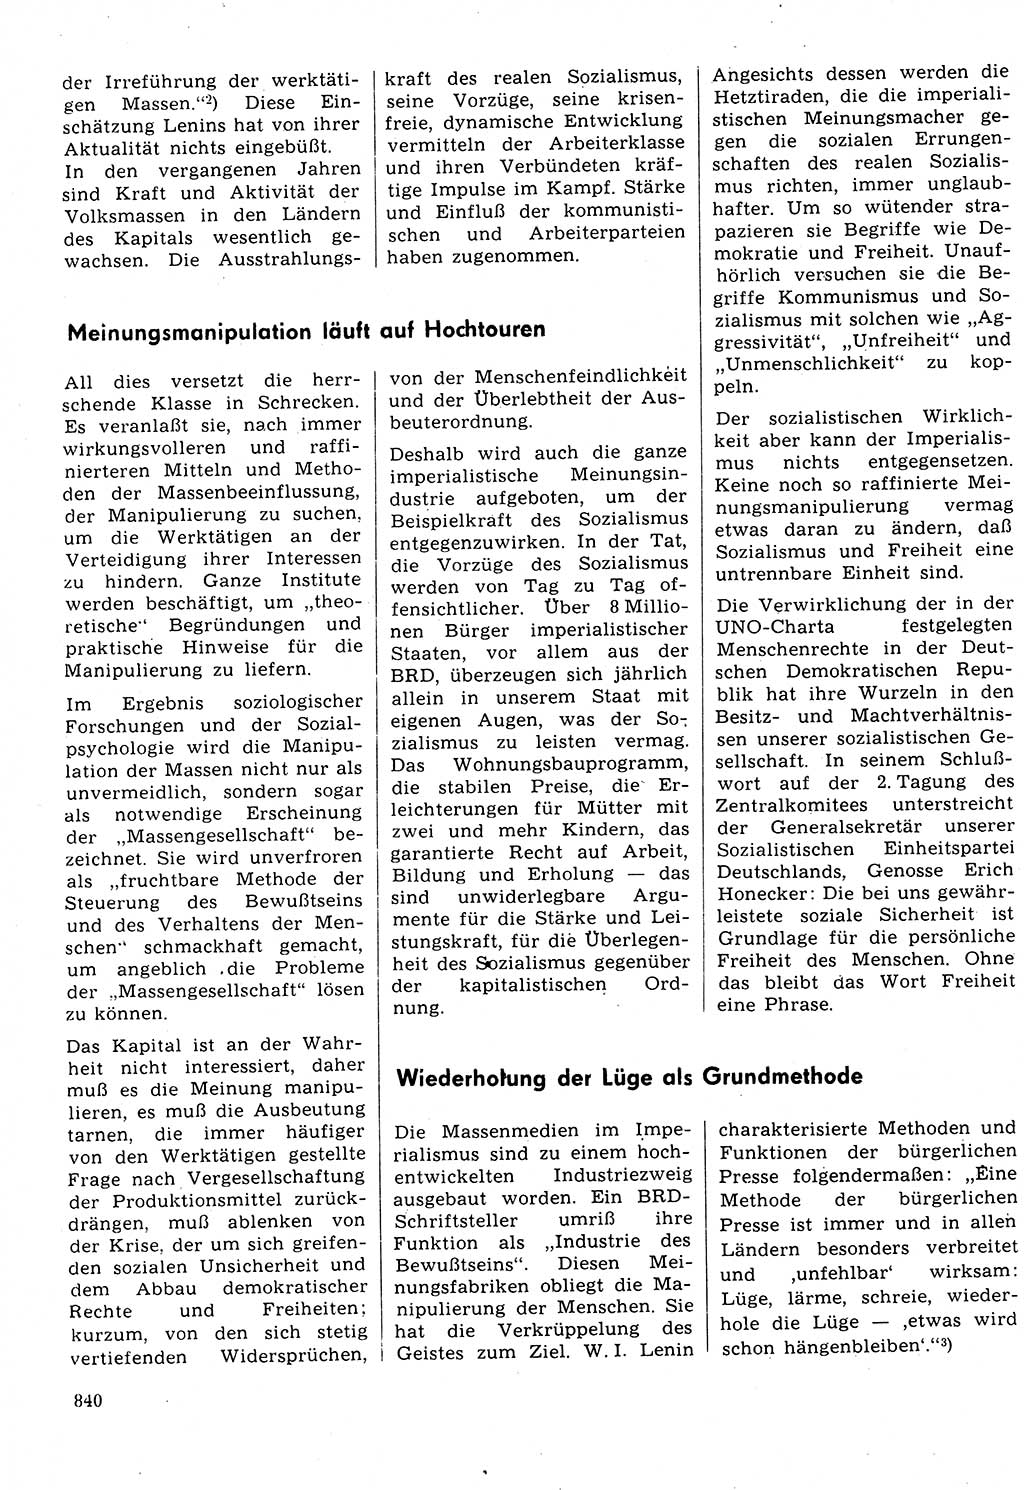 Neuer Weg (NW), Organ des Zentralkomitees (ZK) der SED (Sozialistische Einheitspartei Deutschlands) für Fragen des Parteilebens, 31. Jahrgang [Deutsche Demokratische Republik (DDR)] 1976, Seite 840 (NW ZK SED DDR 1976, S. 840)